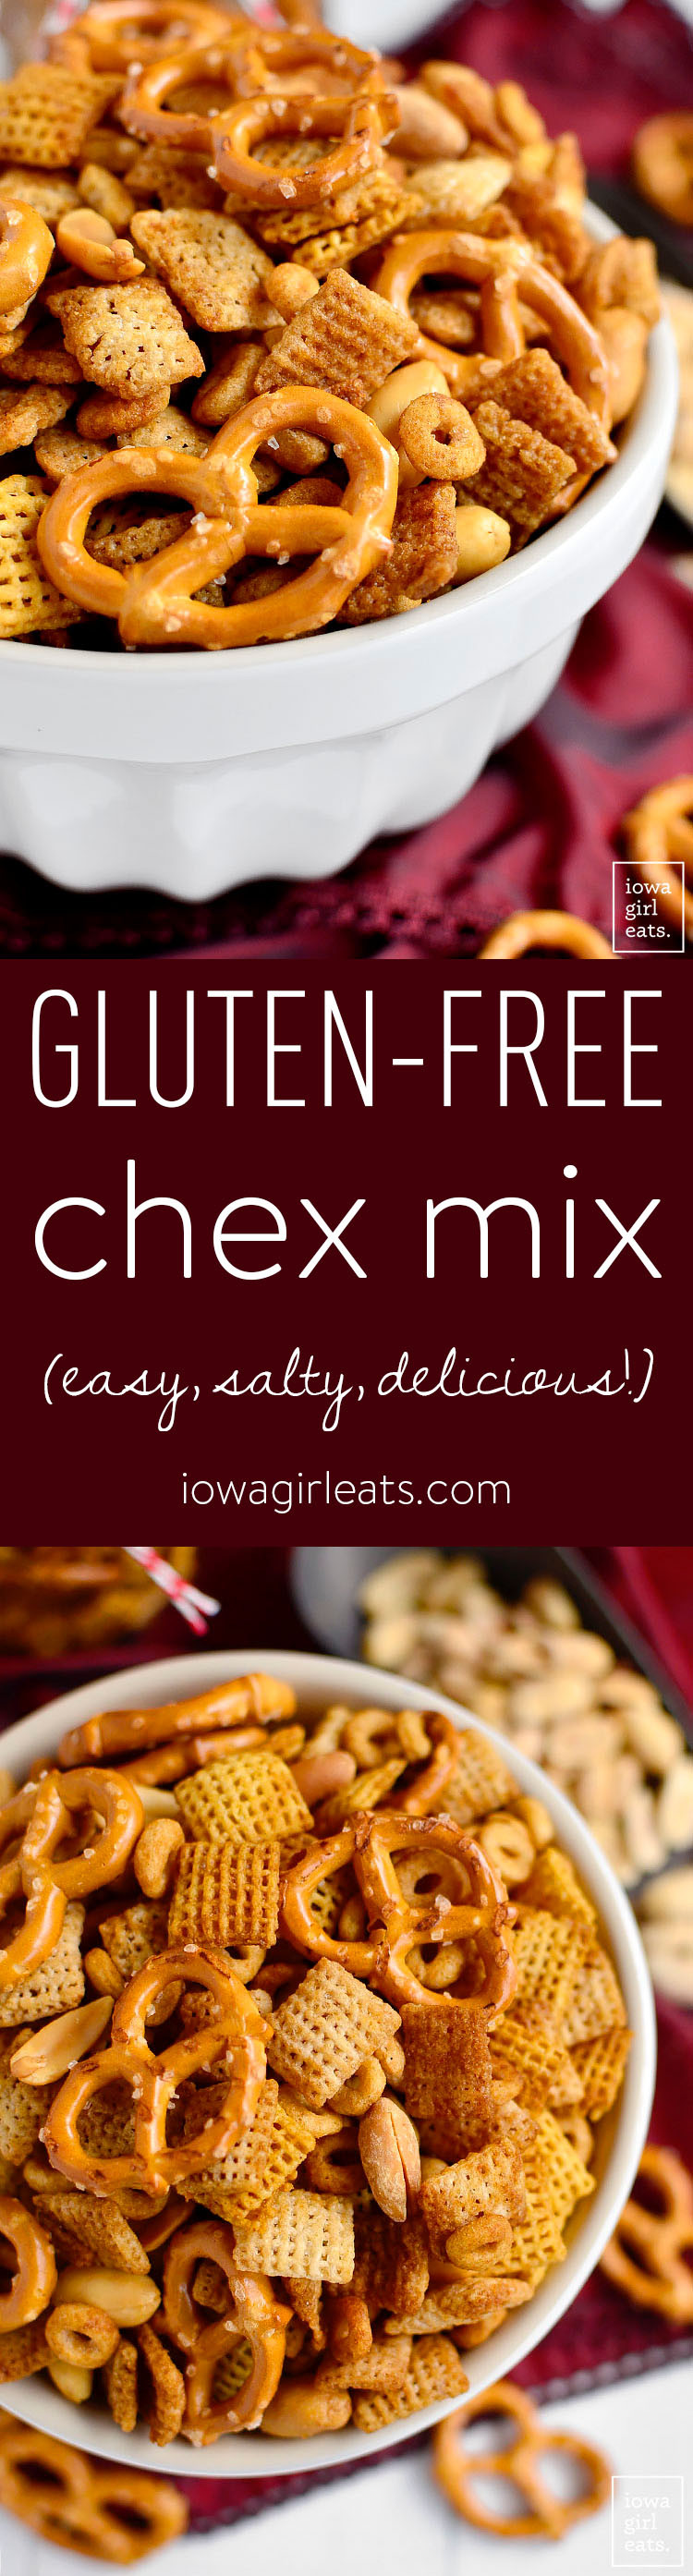 Gluten Free Chex Recipes
 Gluten Free Chex Mix Easy Gluten Free Snack Recipe